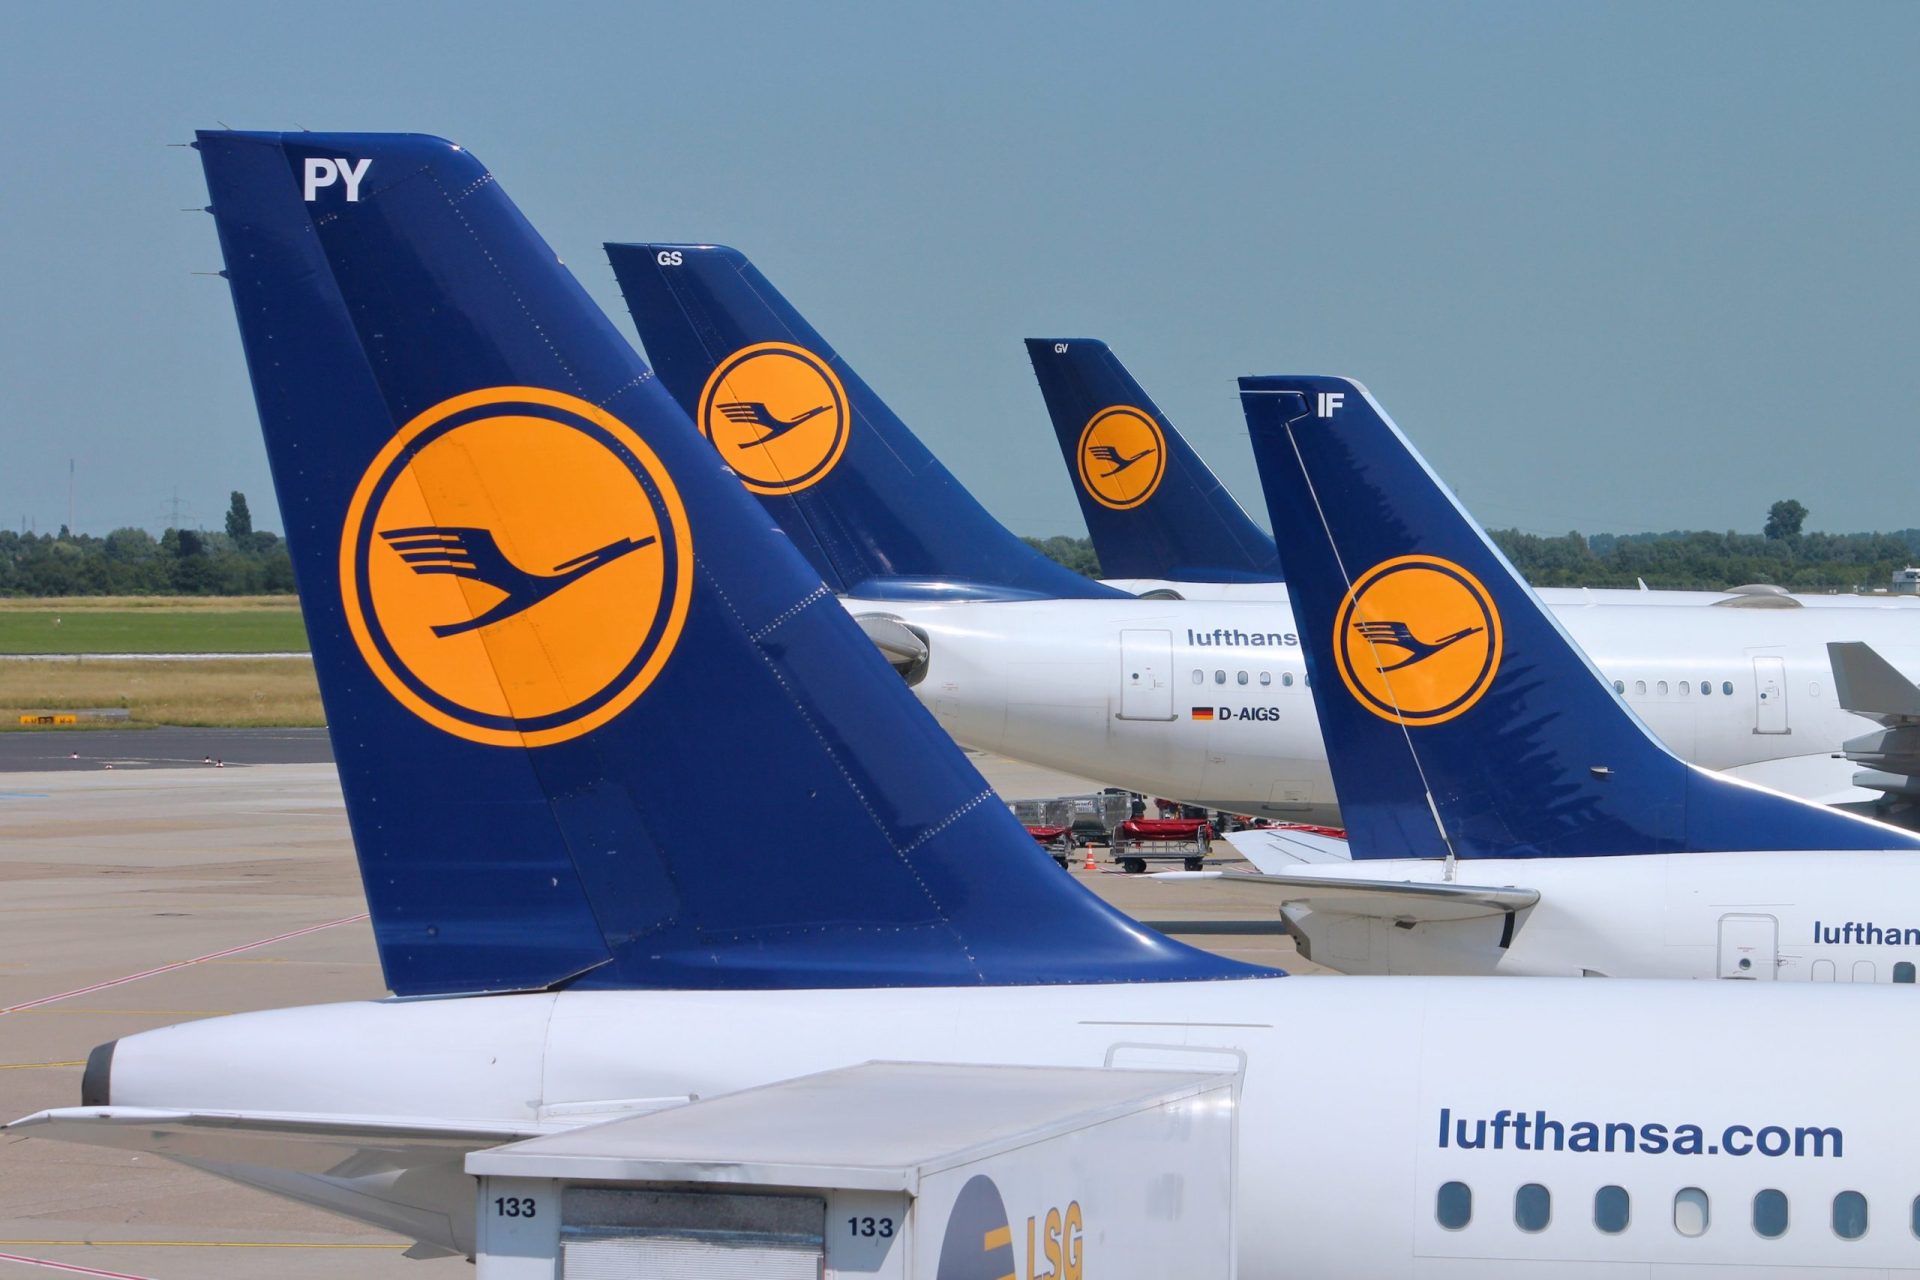 Greve da Lufthansa afecta ligações com Portugal